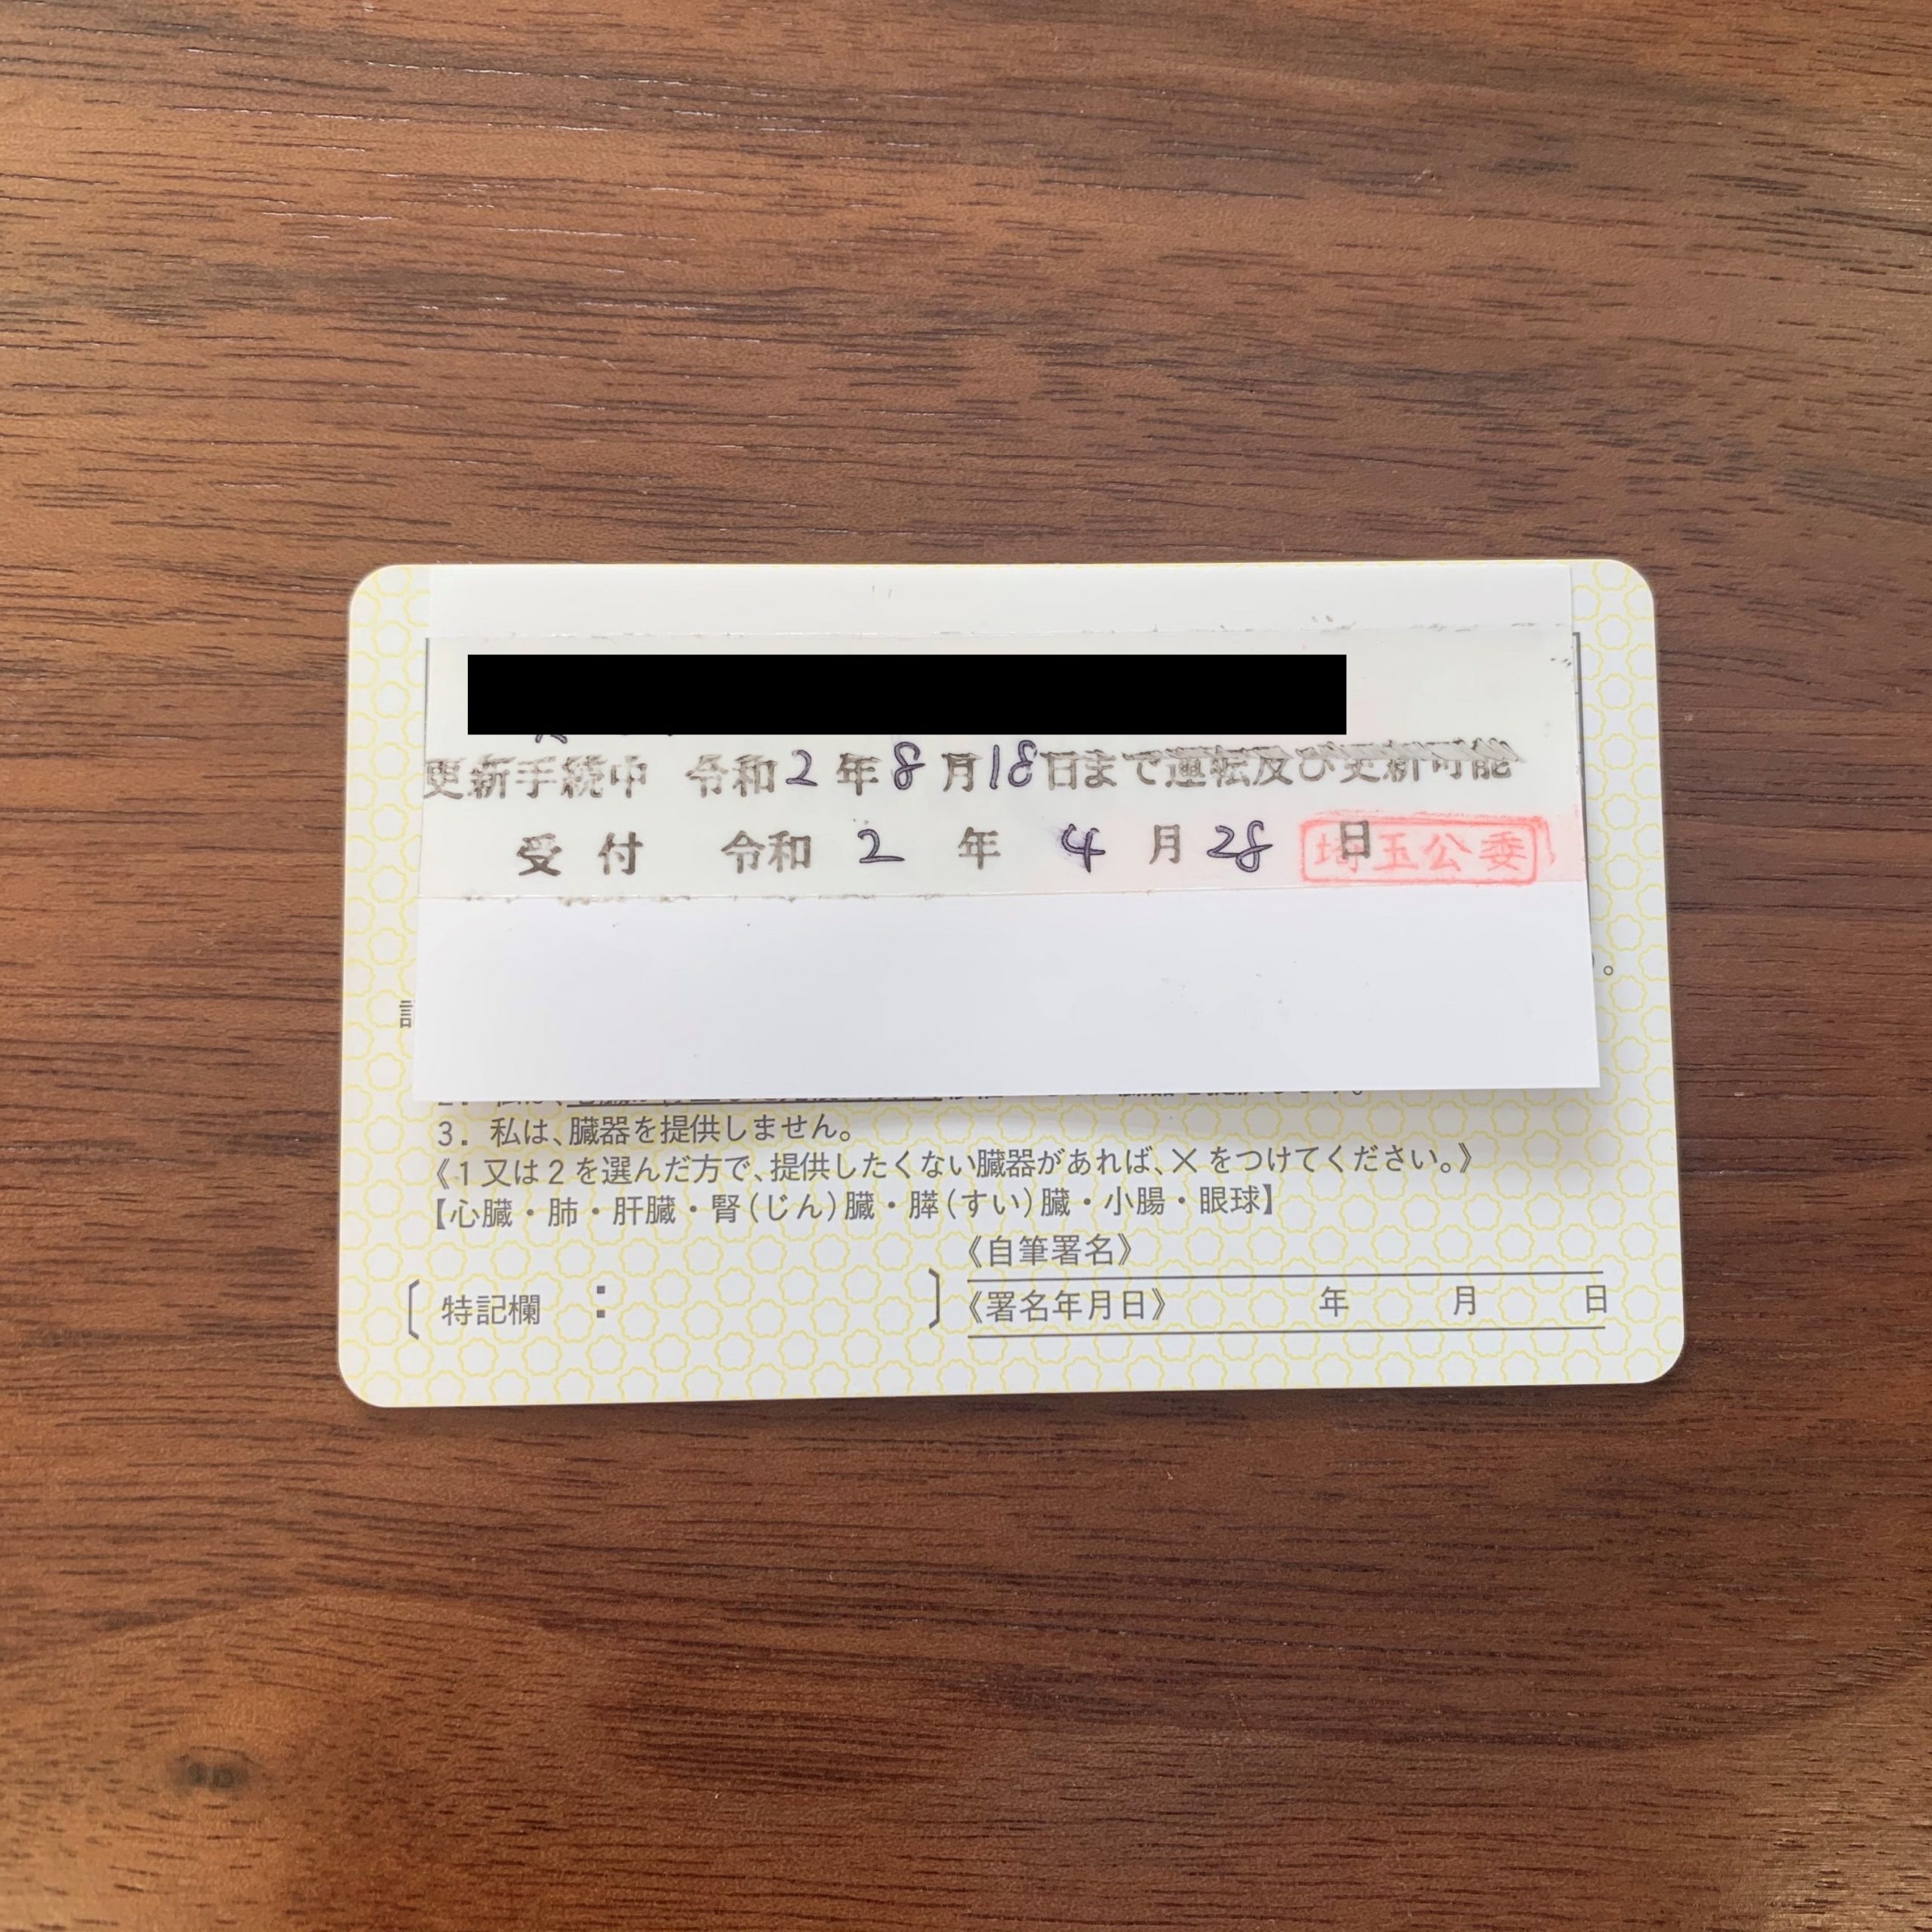 更新 埼玉 県 延長 免許 申請による運転免許証の有効期限の延長について